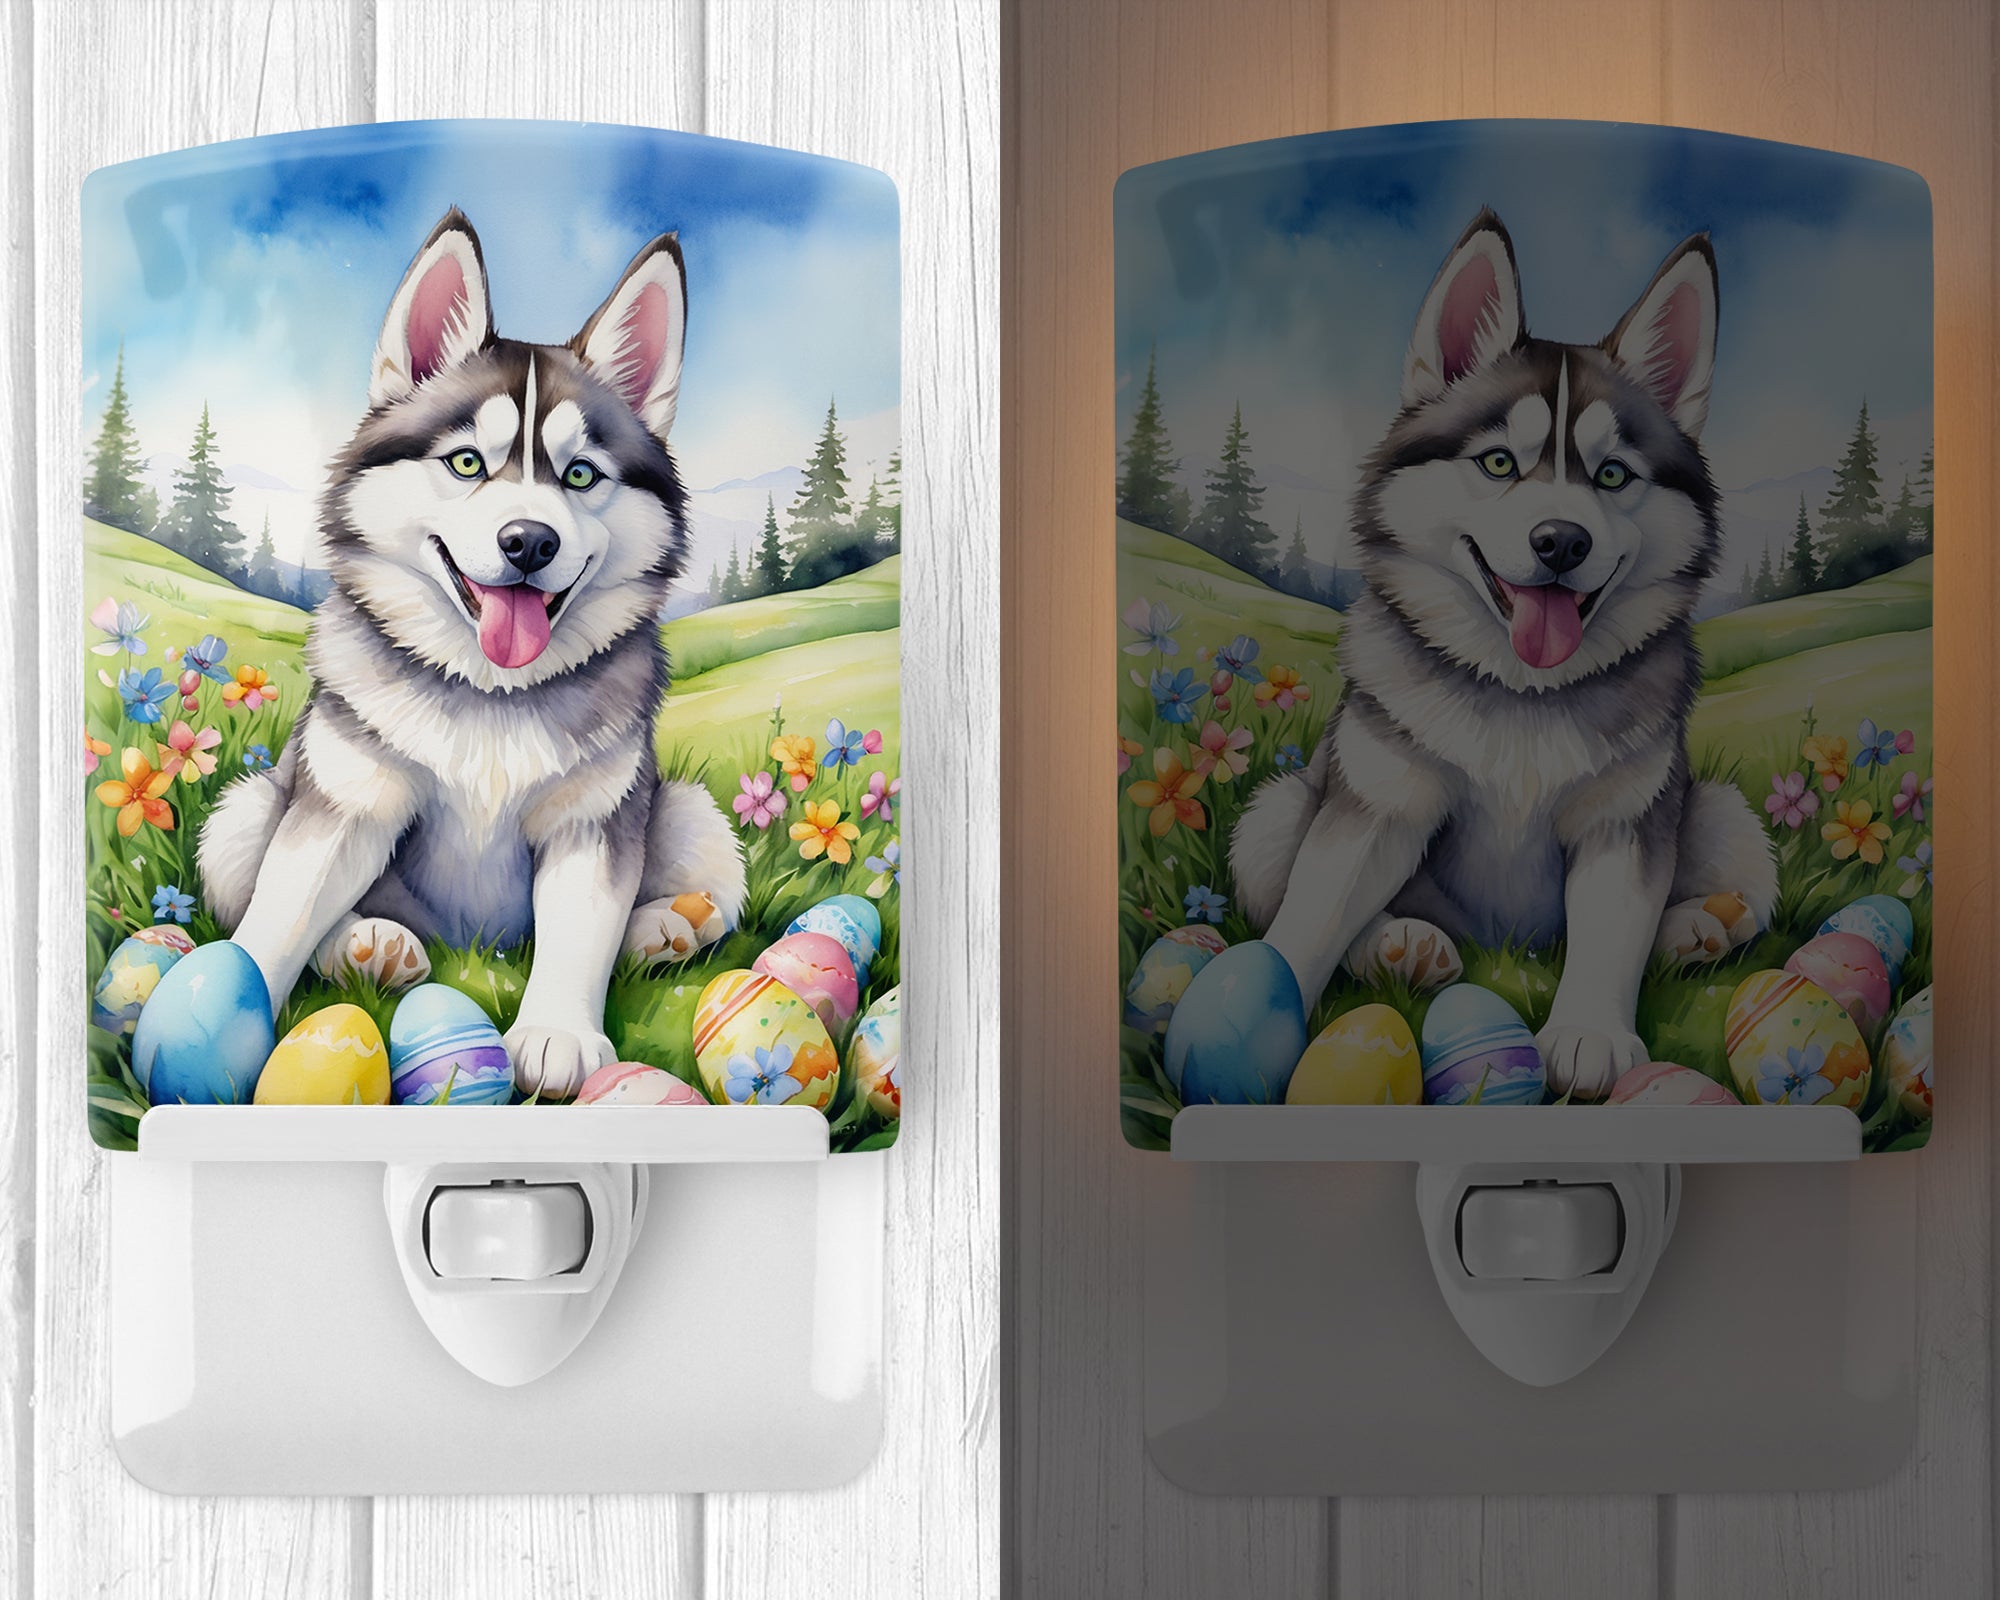 Buy this Siberian Husky Easter Egg Hunt Ceramic Night Light